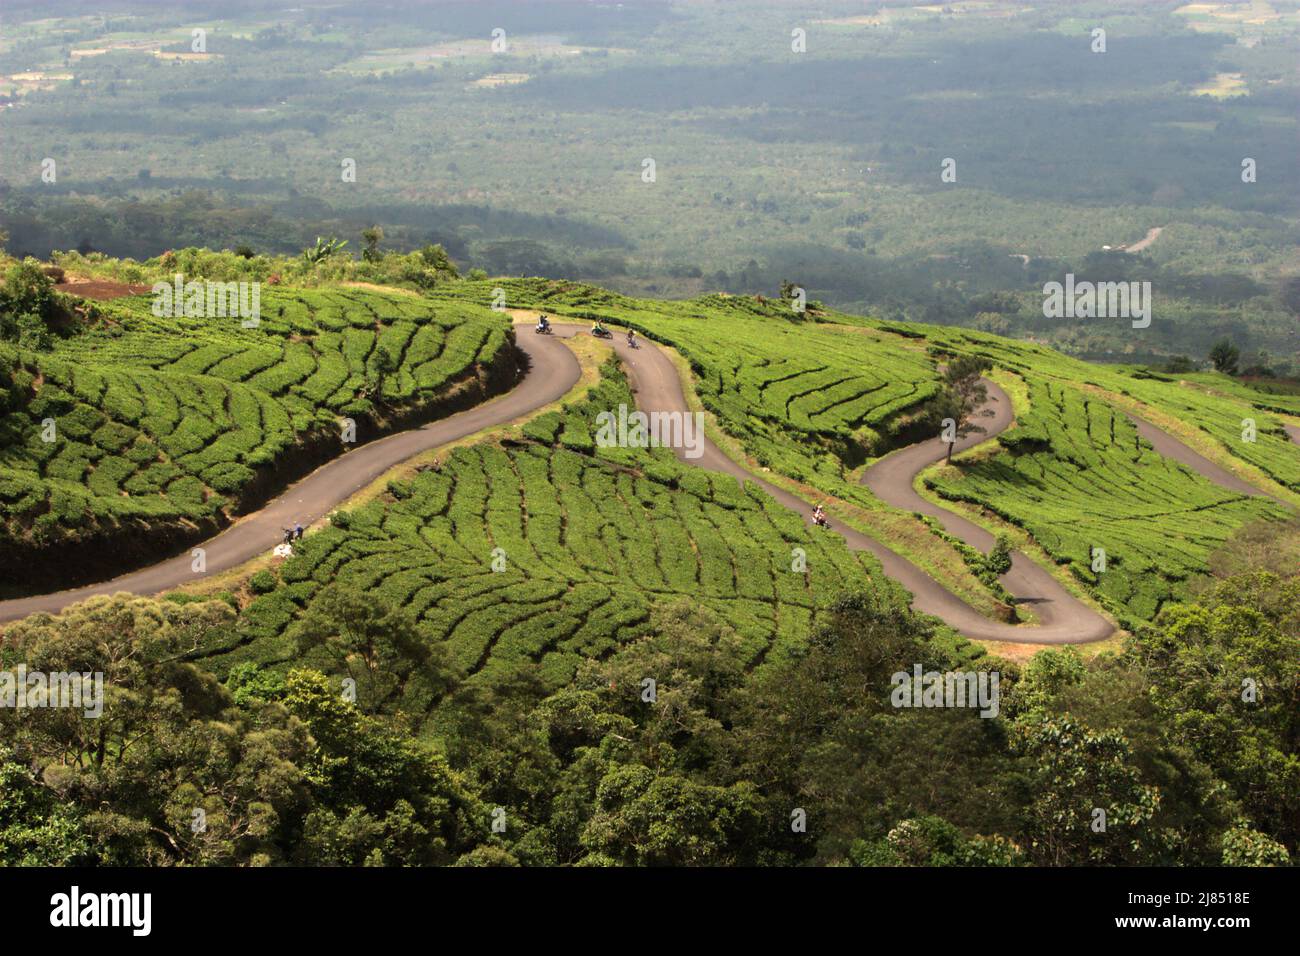 Autofahrer fahren auf der Straße, die sich zwischen einer Teeplantage am Fuße des Mount Dempo in Pagar Alam, Süd-Sumatra, Indonesien erstreckt. Stockfoto